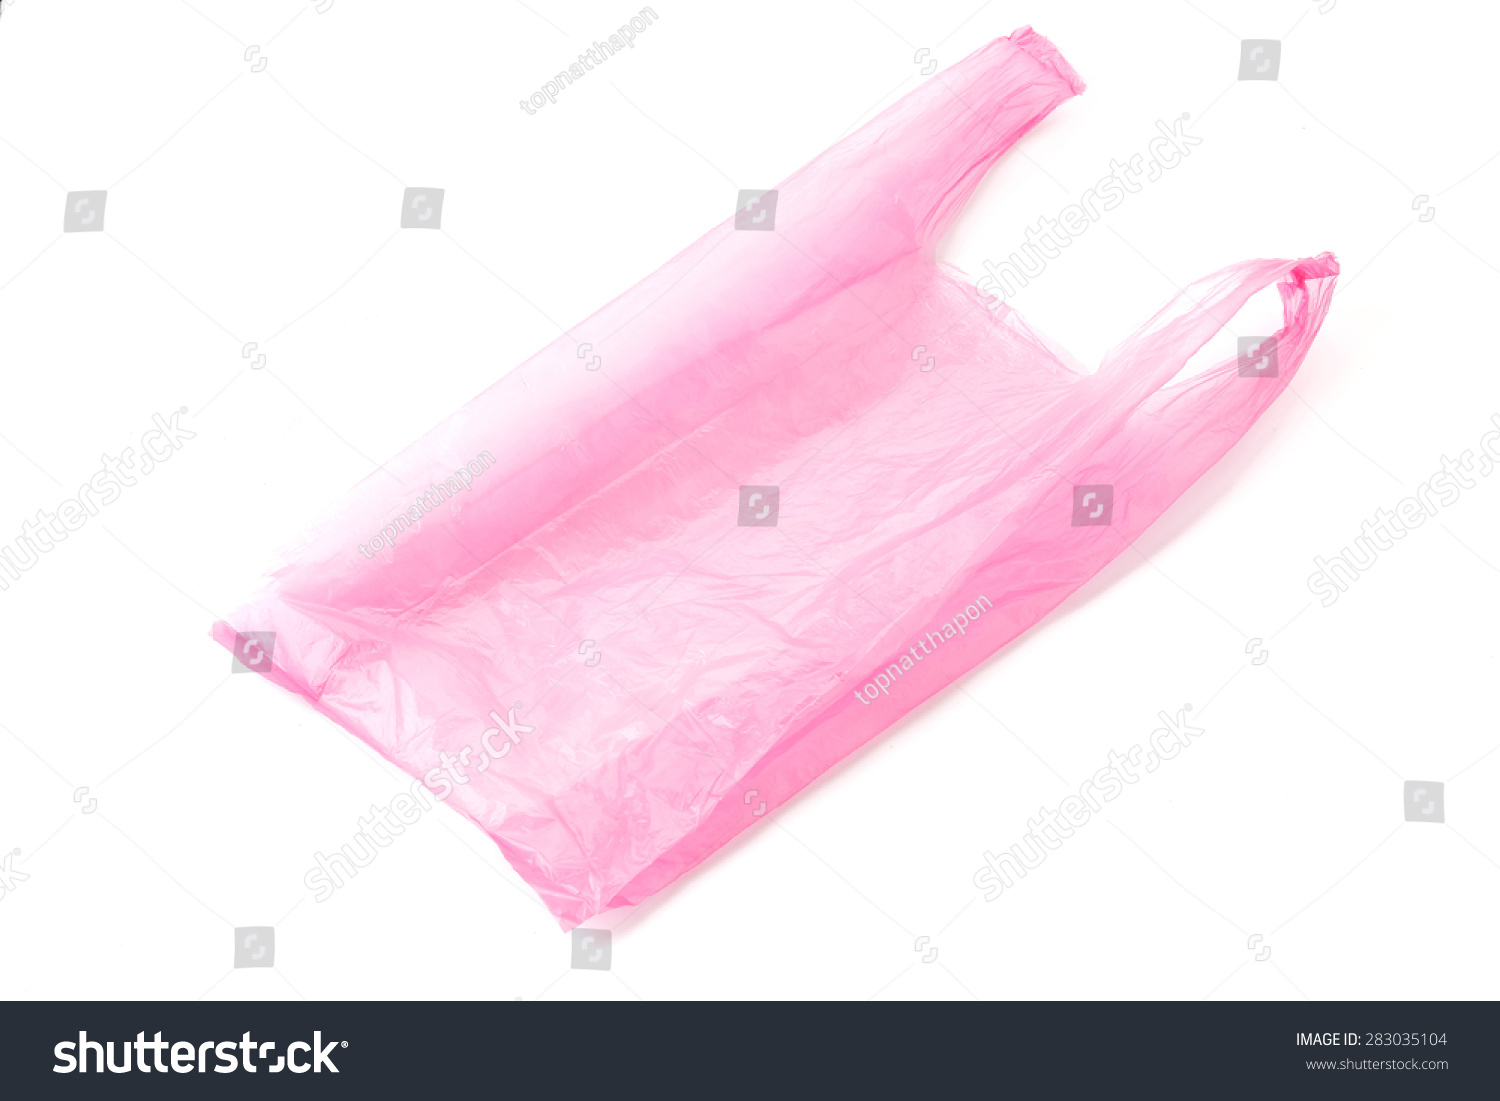 Plastic Bag On White Background Stock Photo 283035104 - Shutterstock